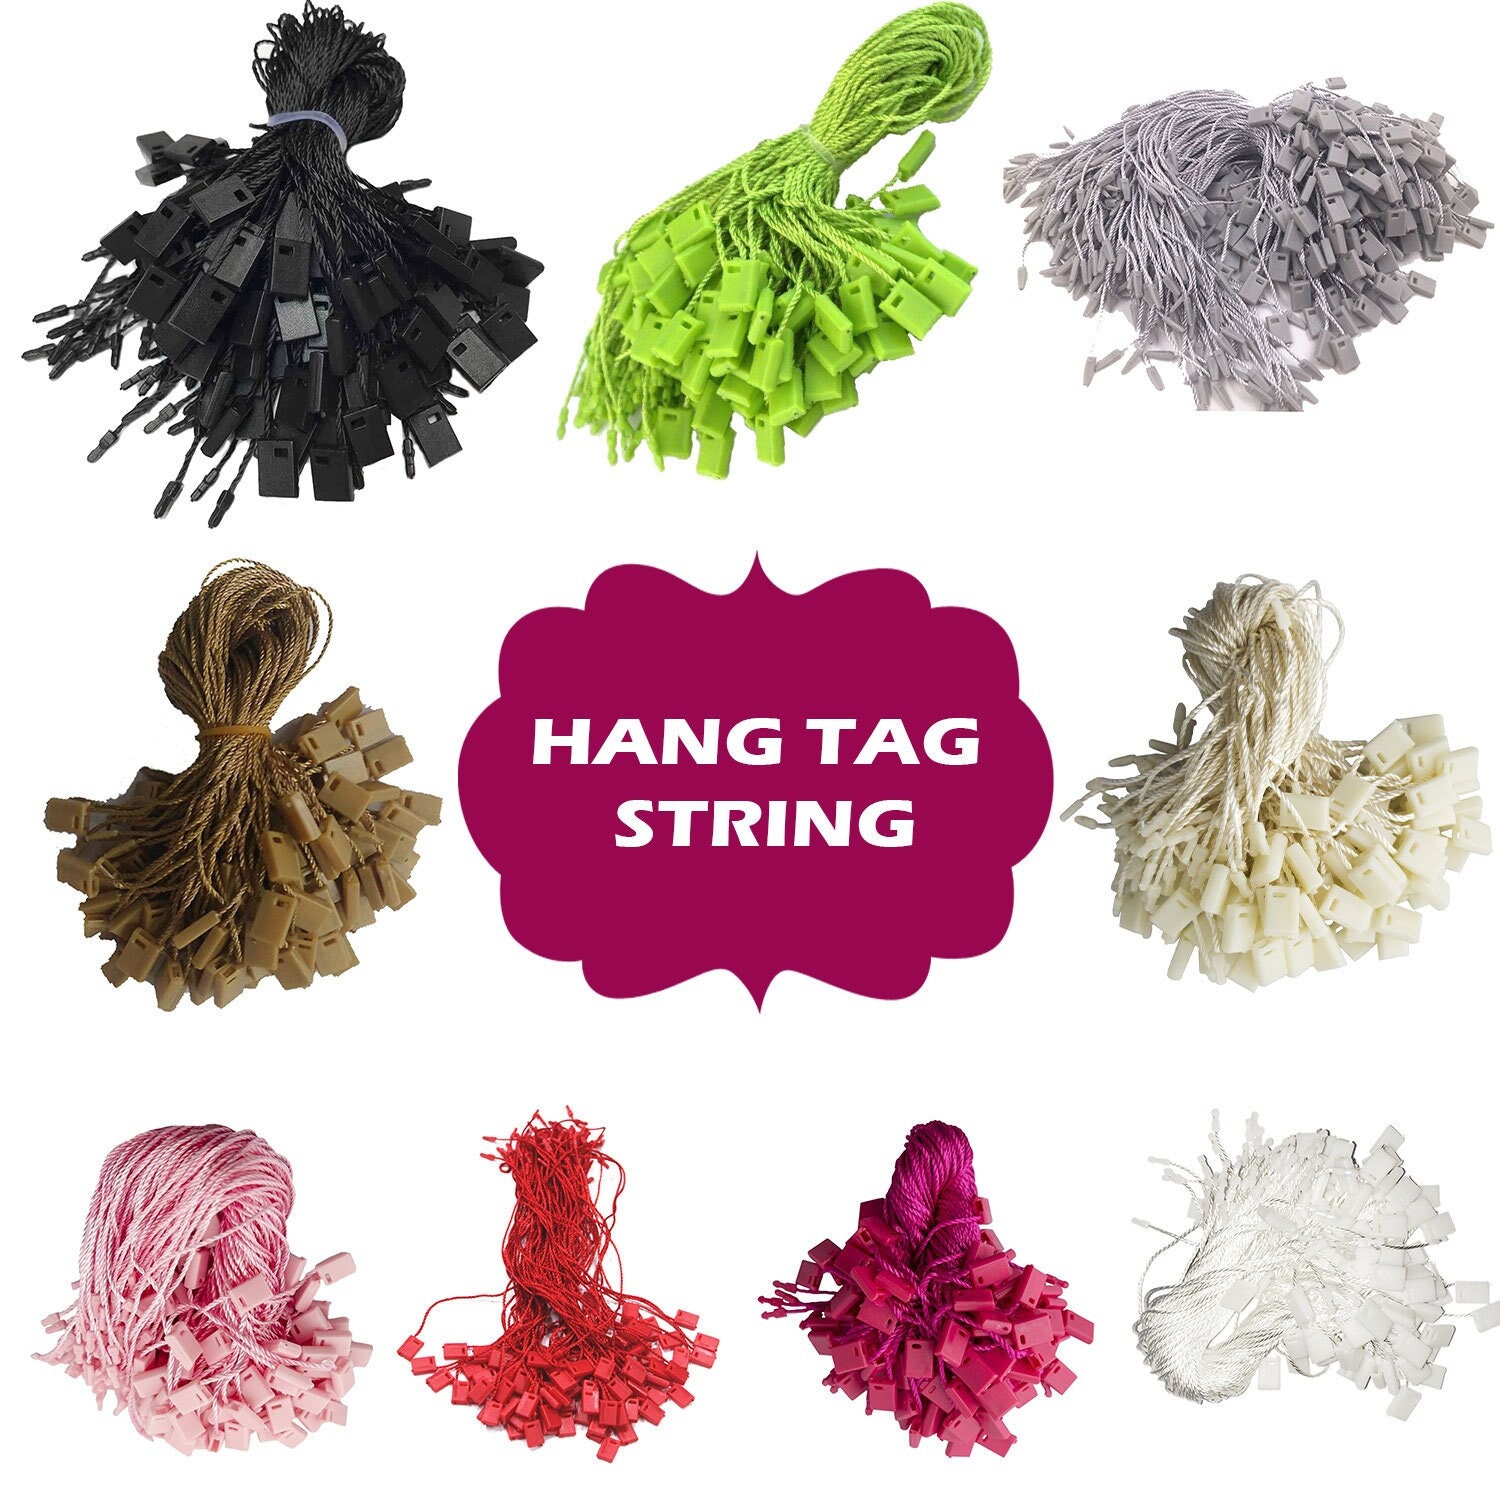 Hang Tag Strings Label Strings Locking Strings Snap Lock Fasteners Swing Tags  Strings 7 Inch Length 